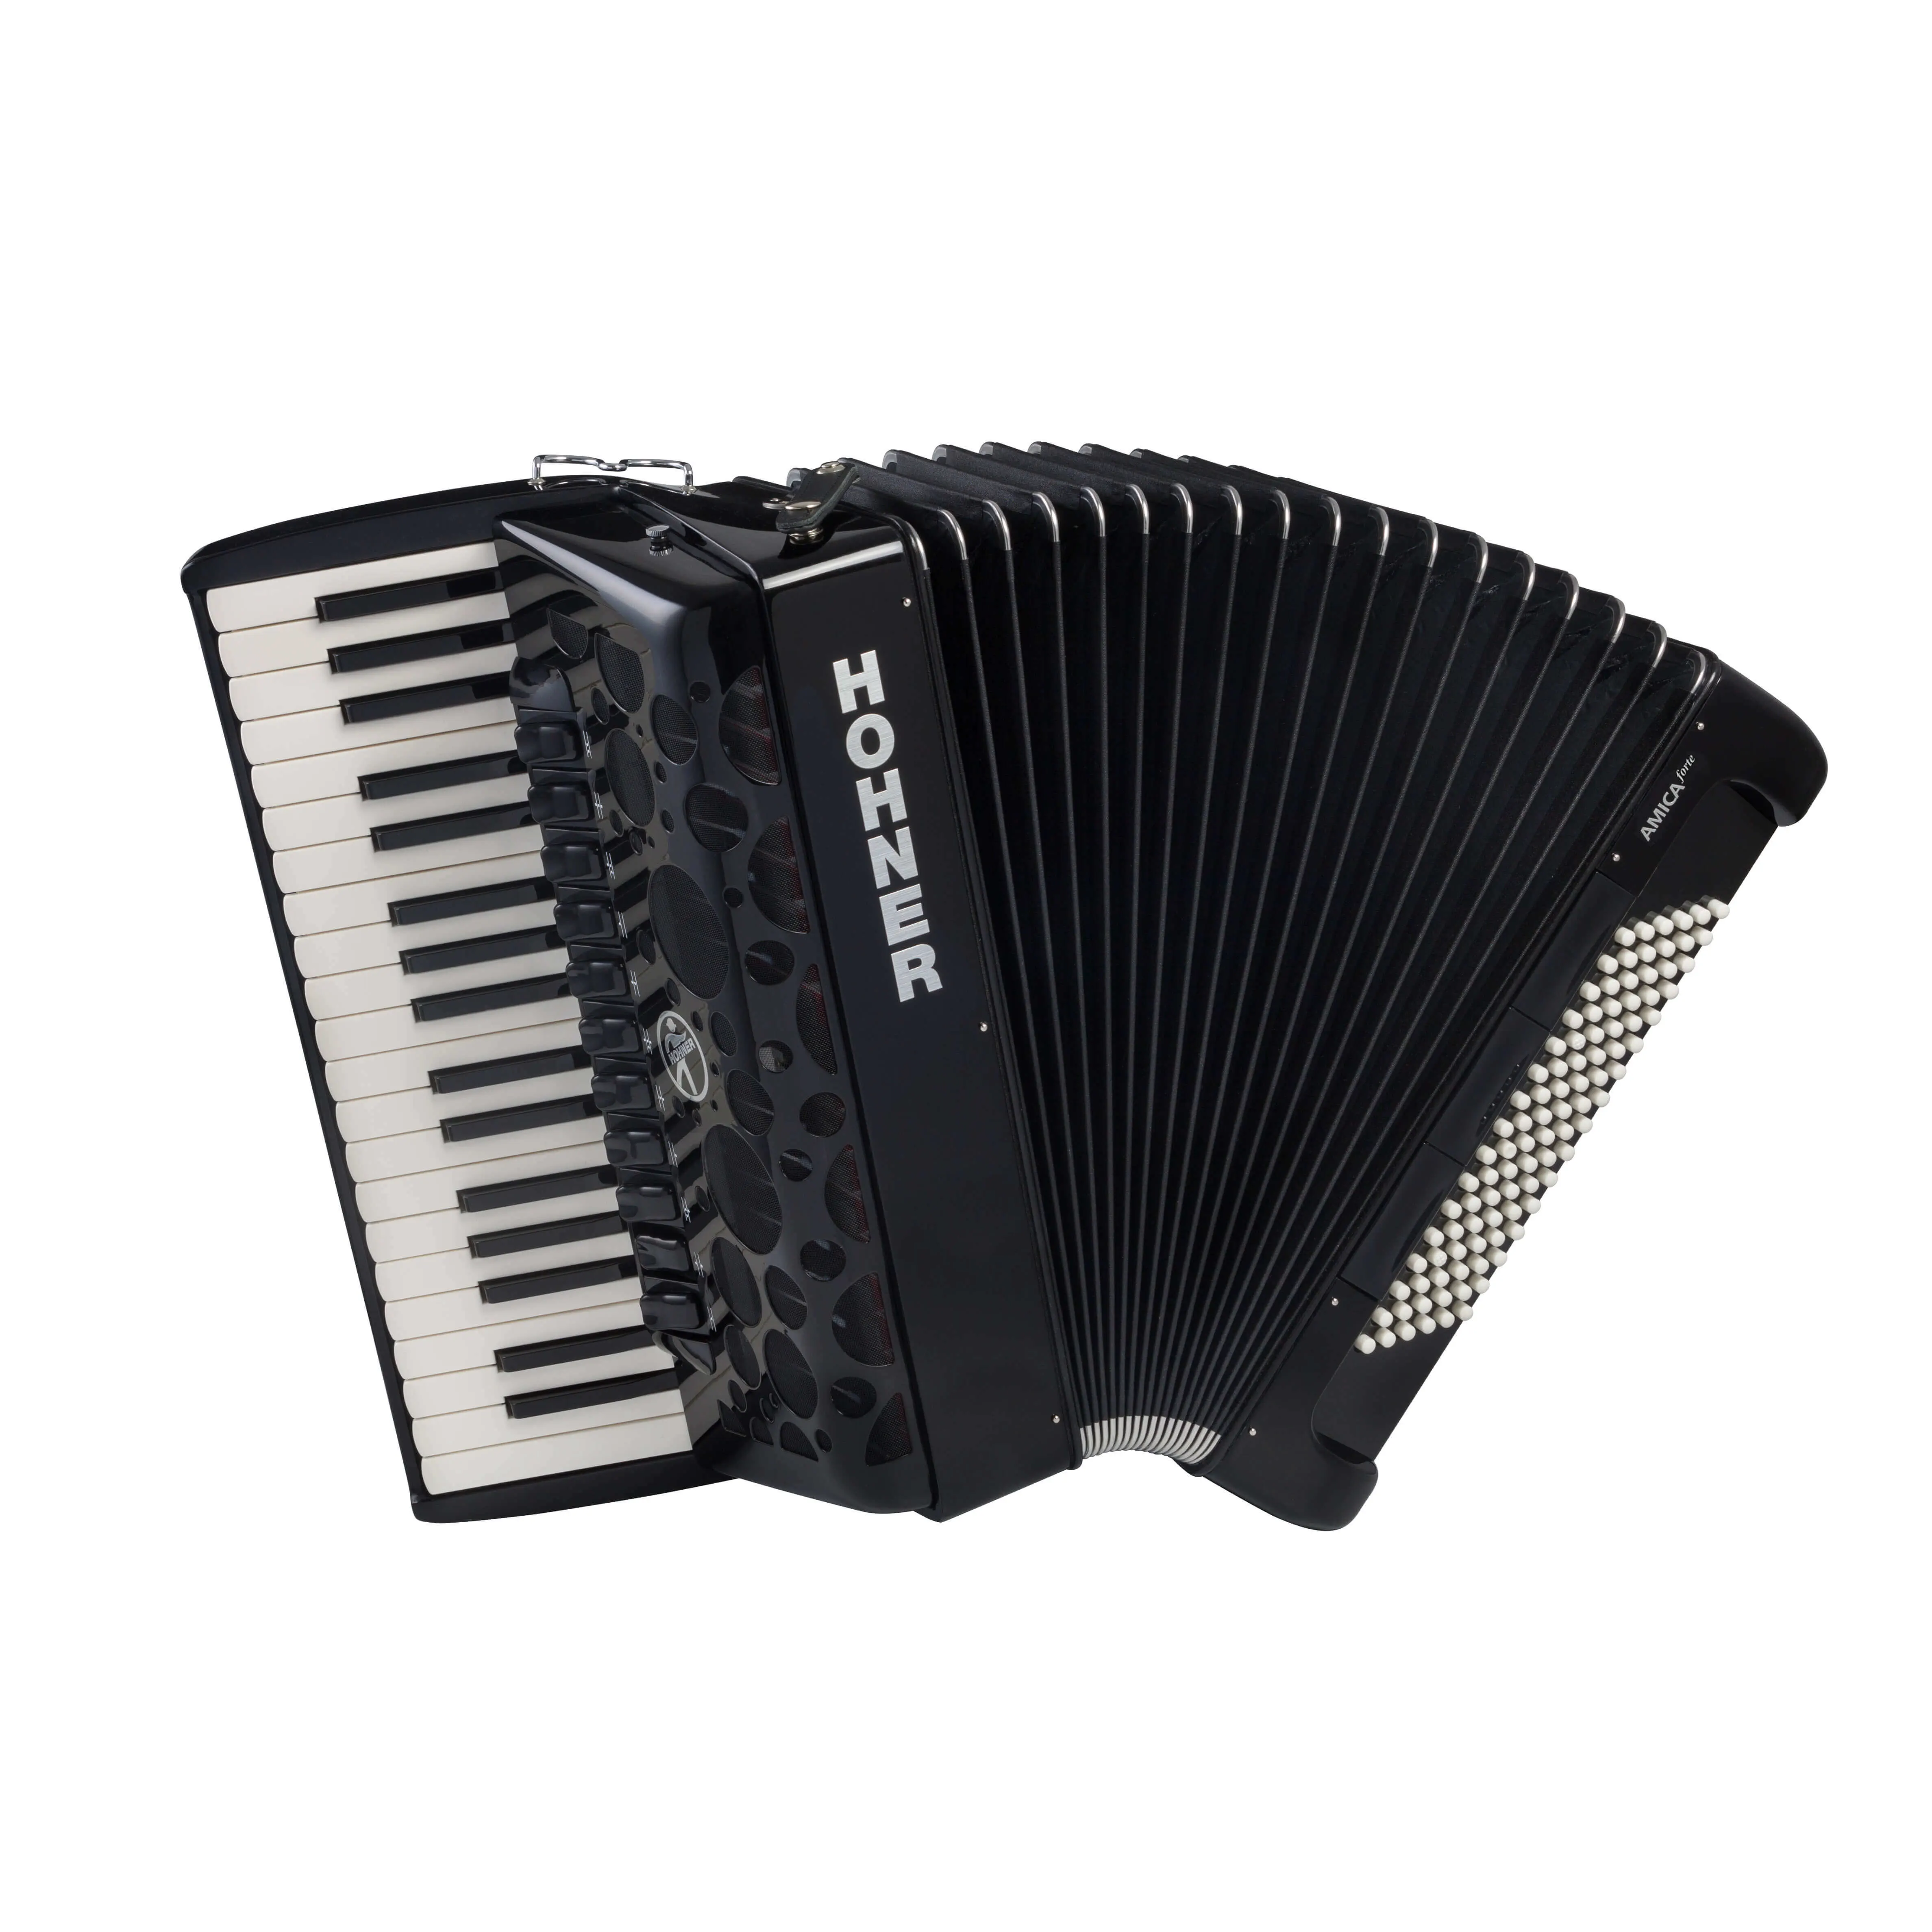 HOHNER AMICA Forte IV 96 Black klavirska harmonika s torbo